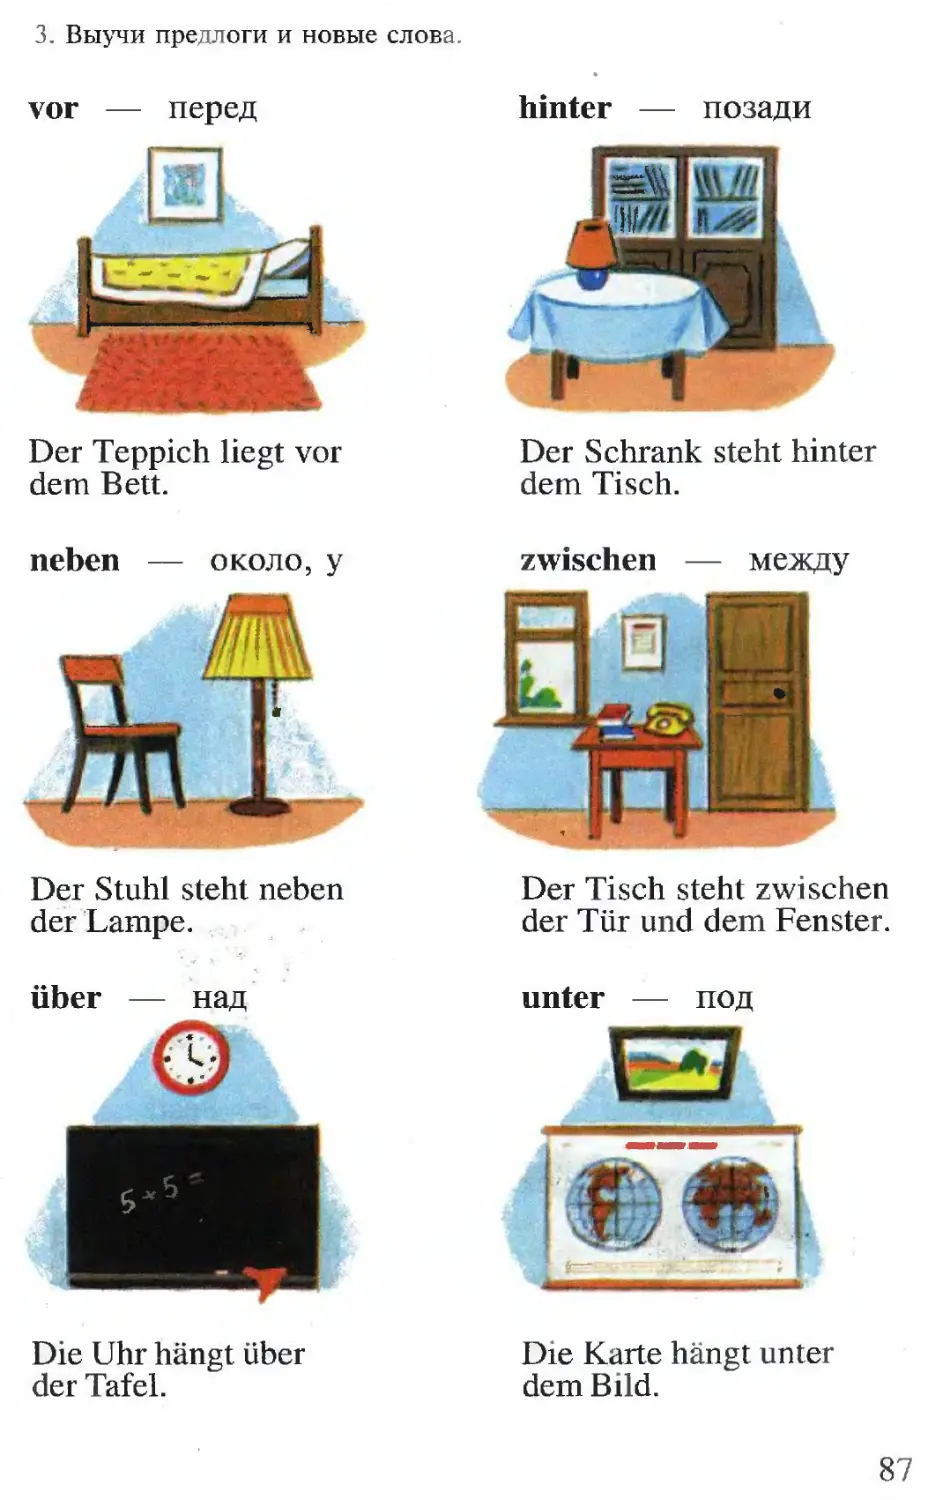 мебель на немецком языке